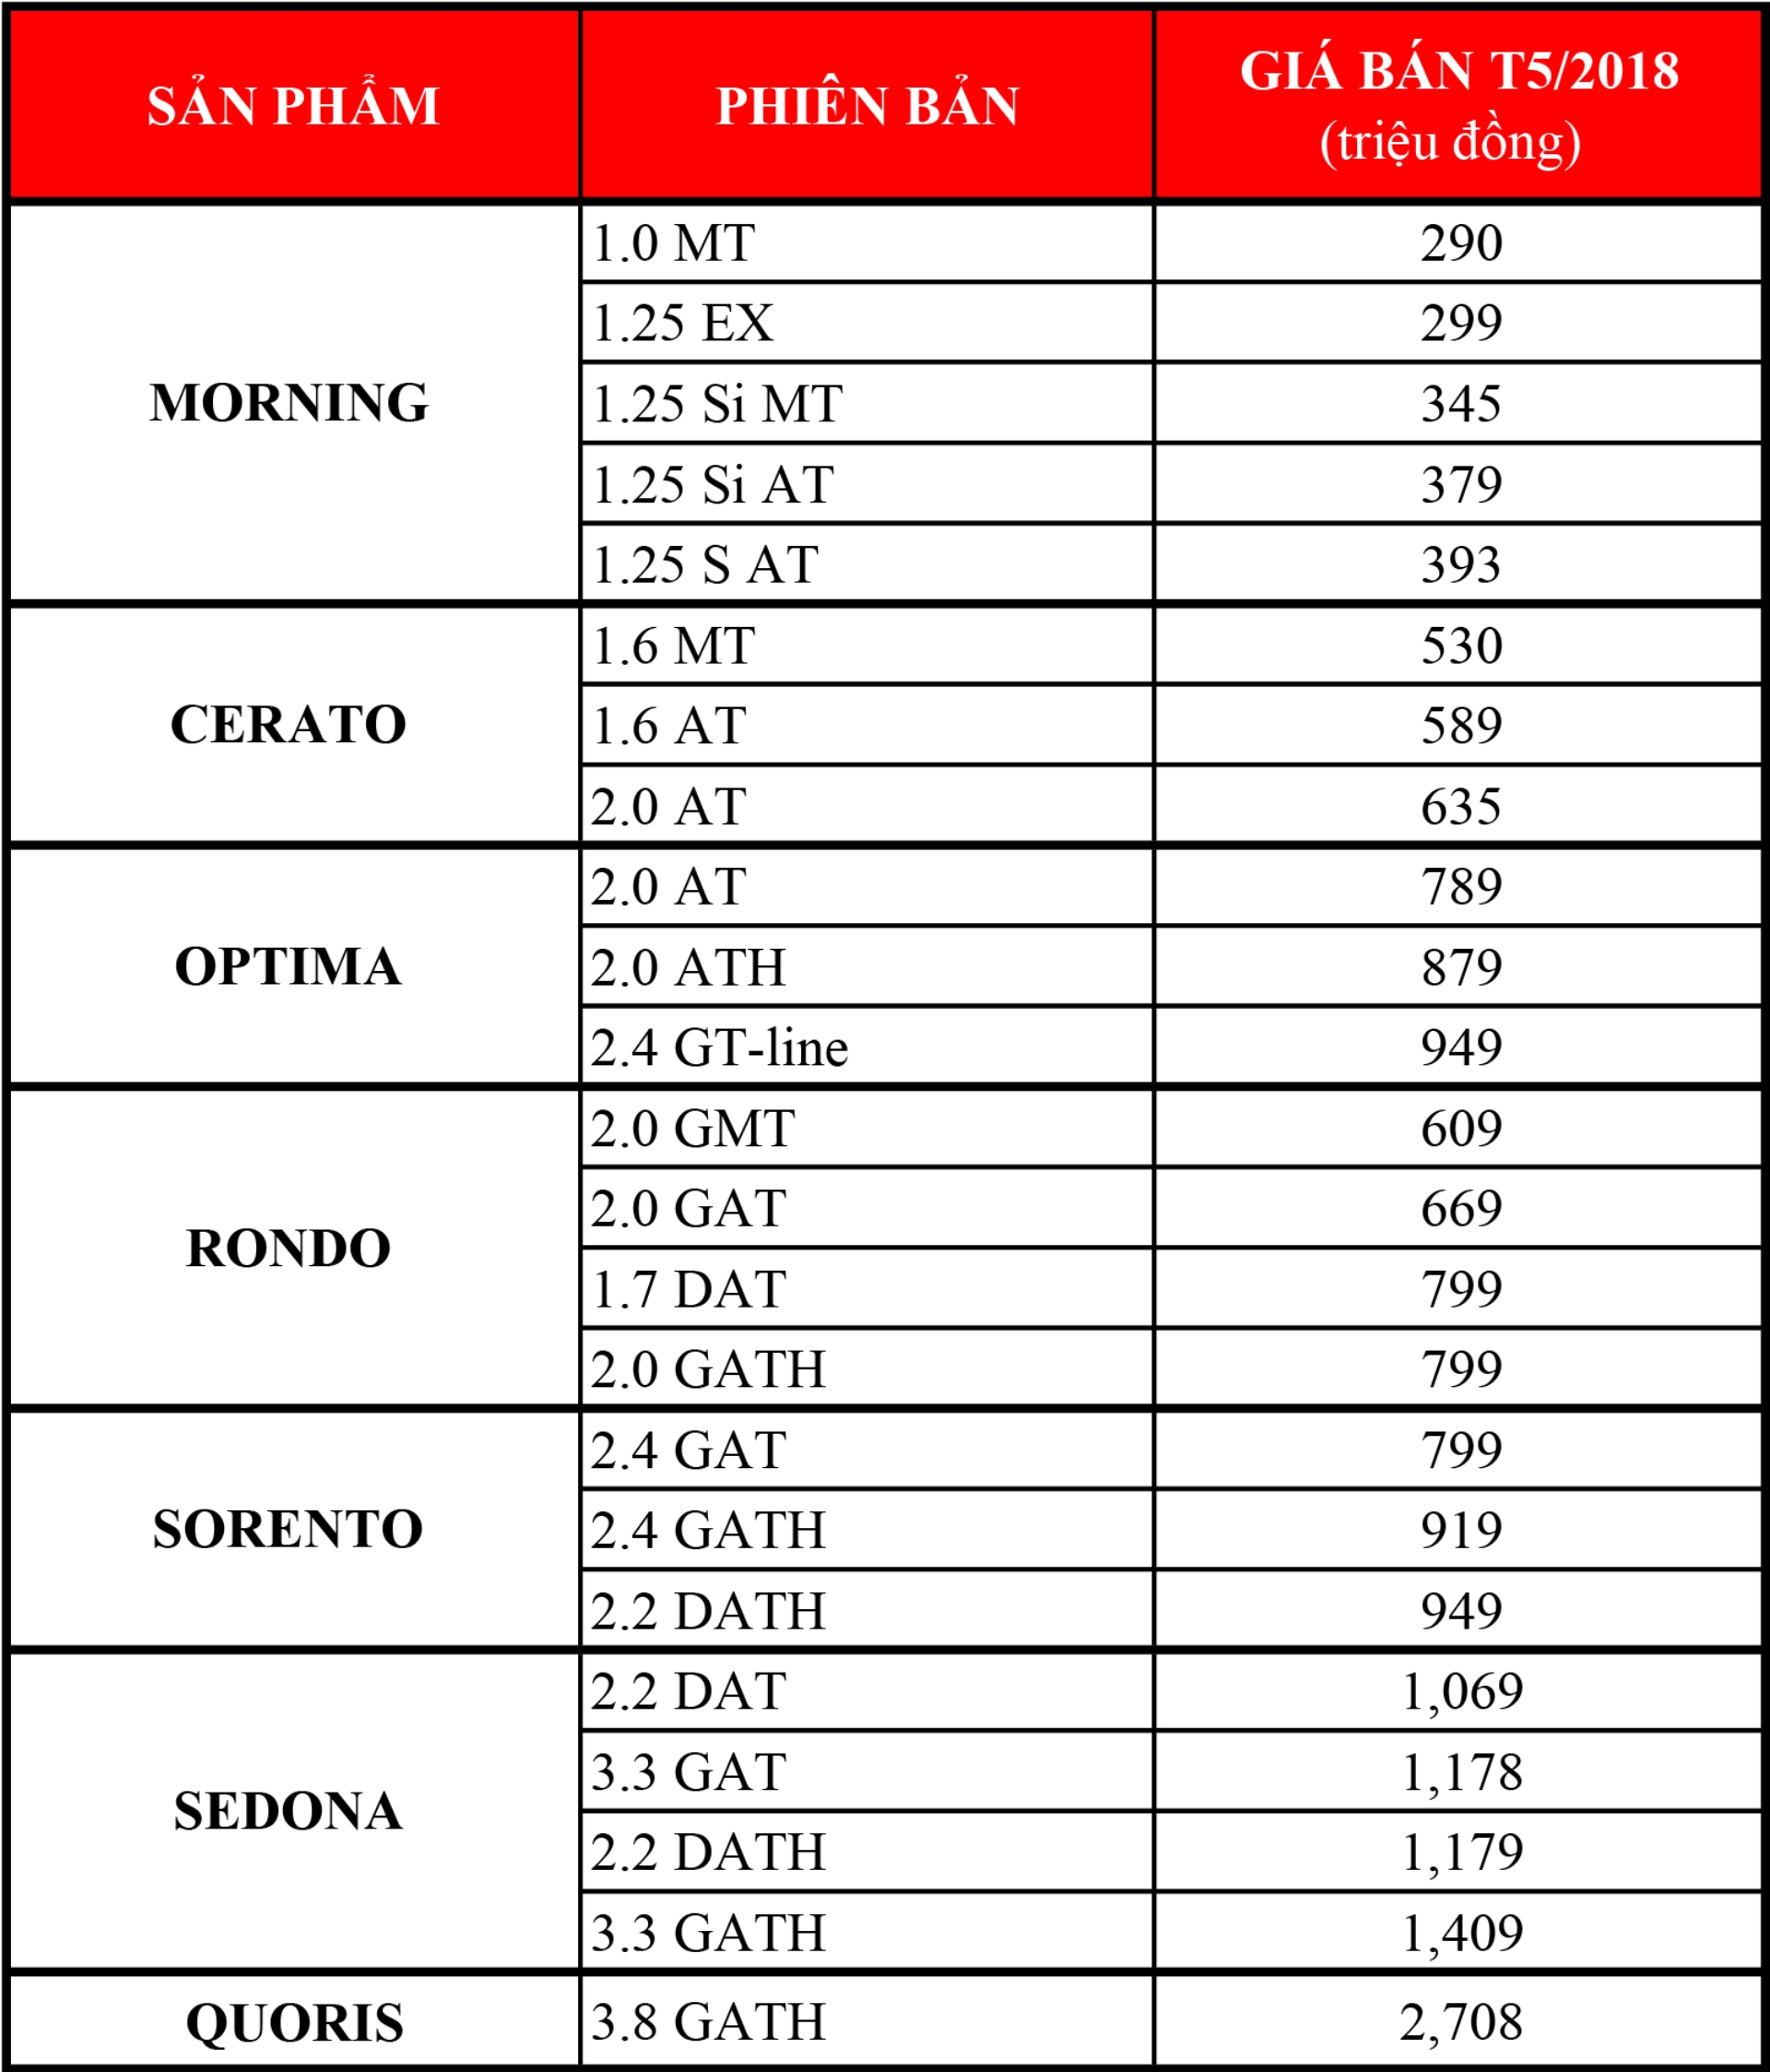 Kia cập nhật bảng giá tháng 5/2018, Sorento tăng nhẹ 10 triệu